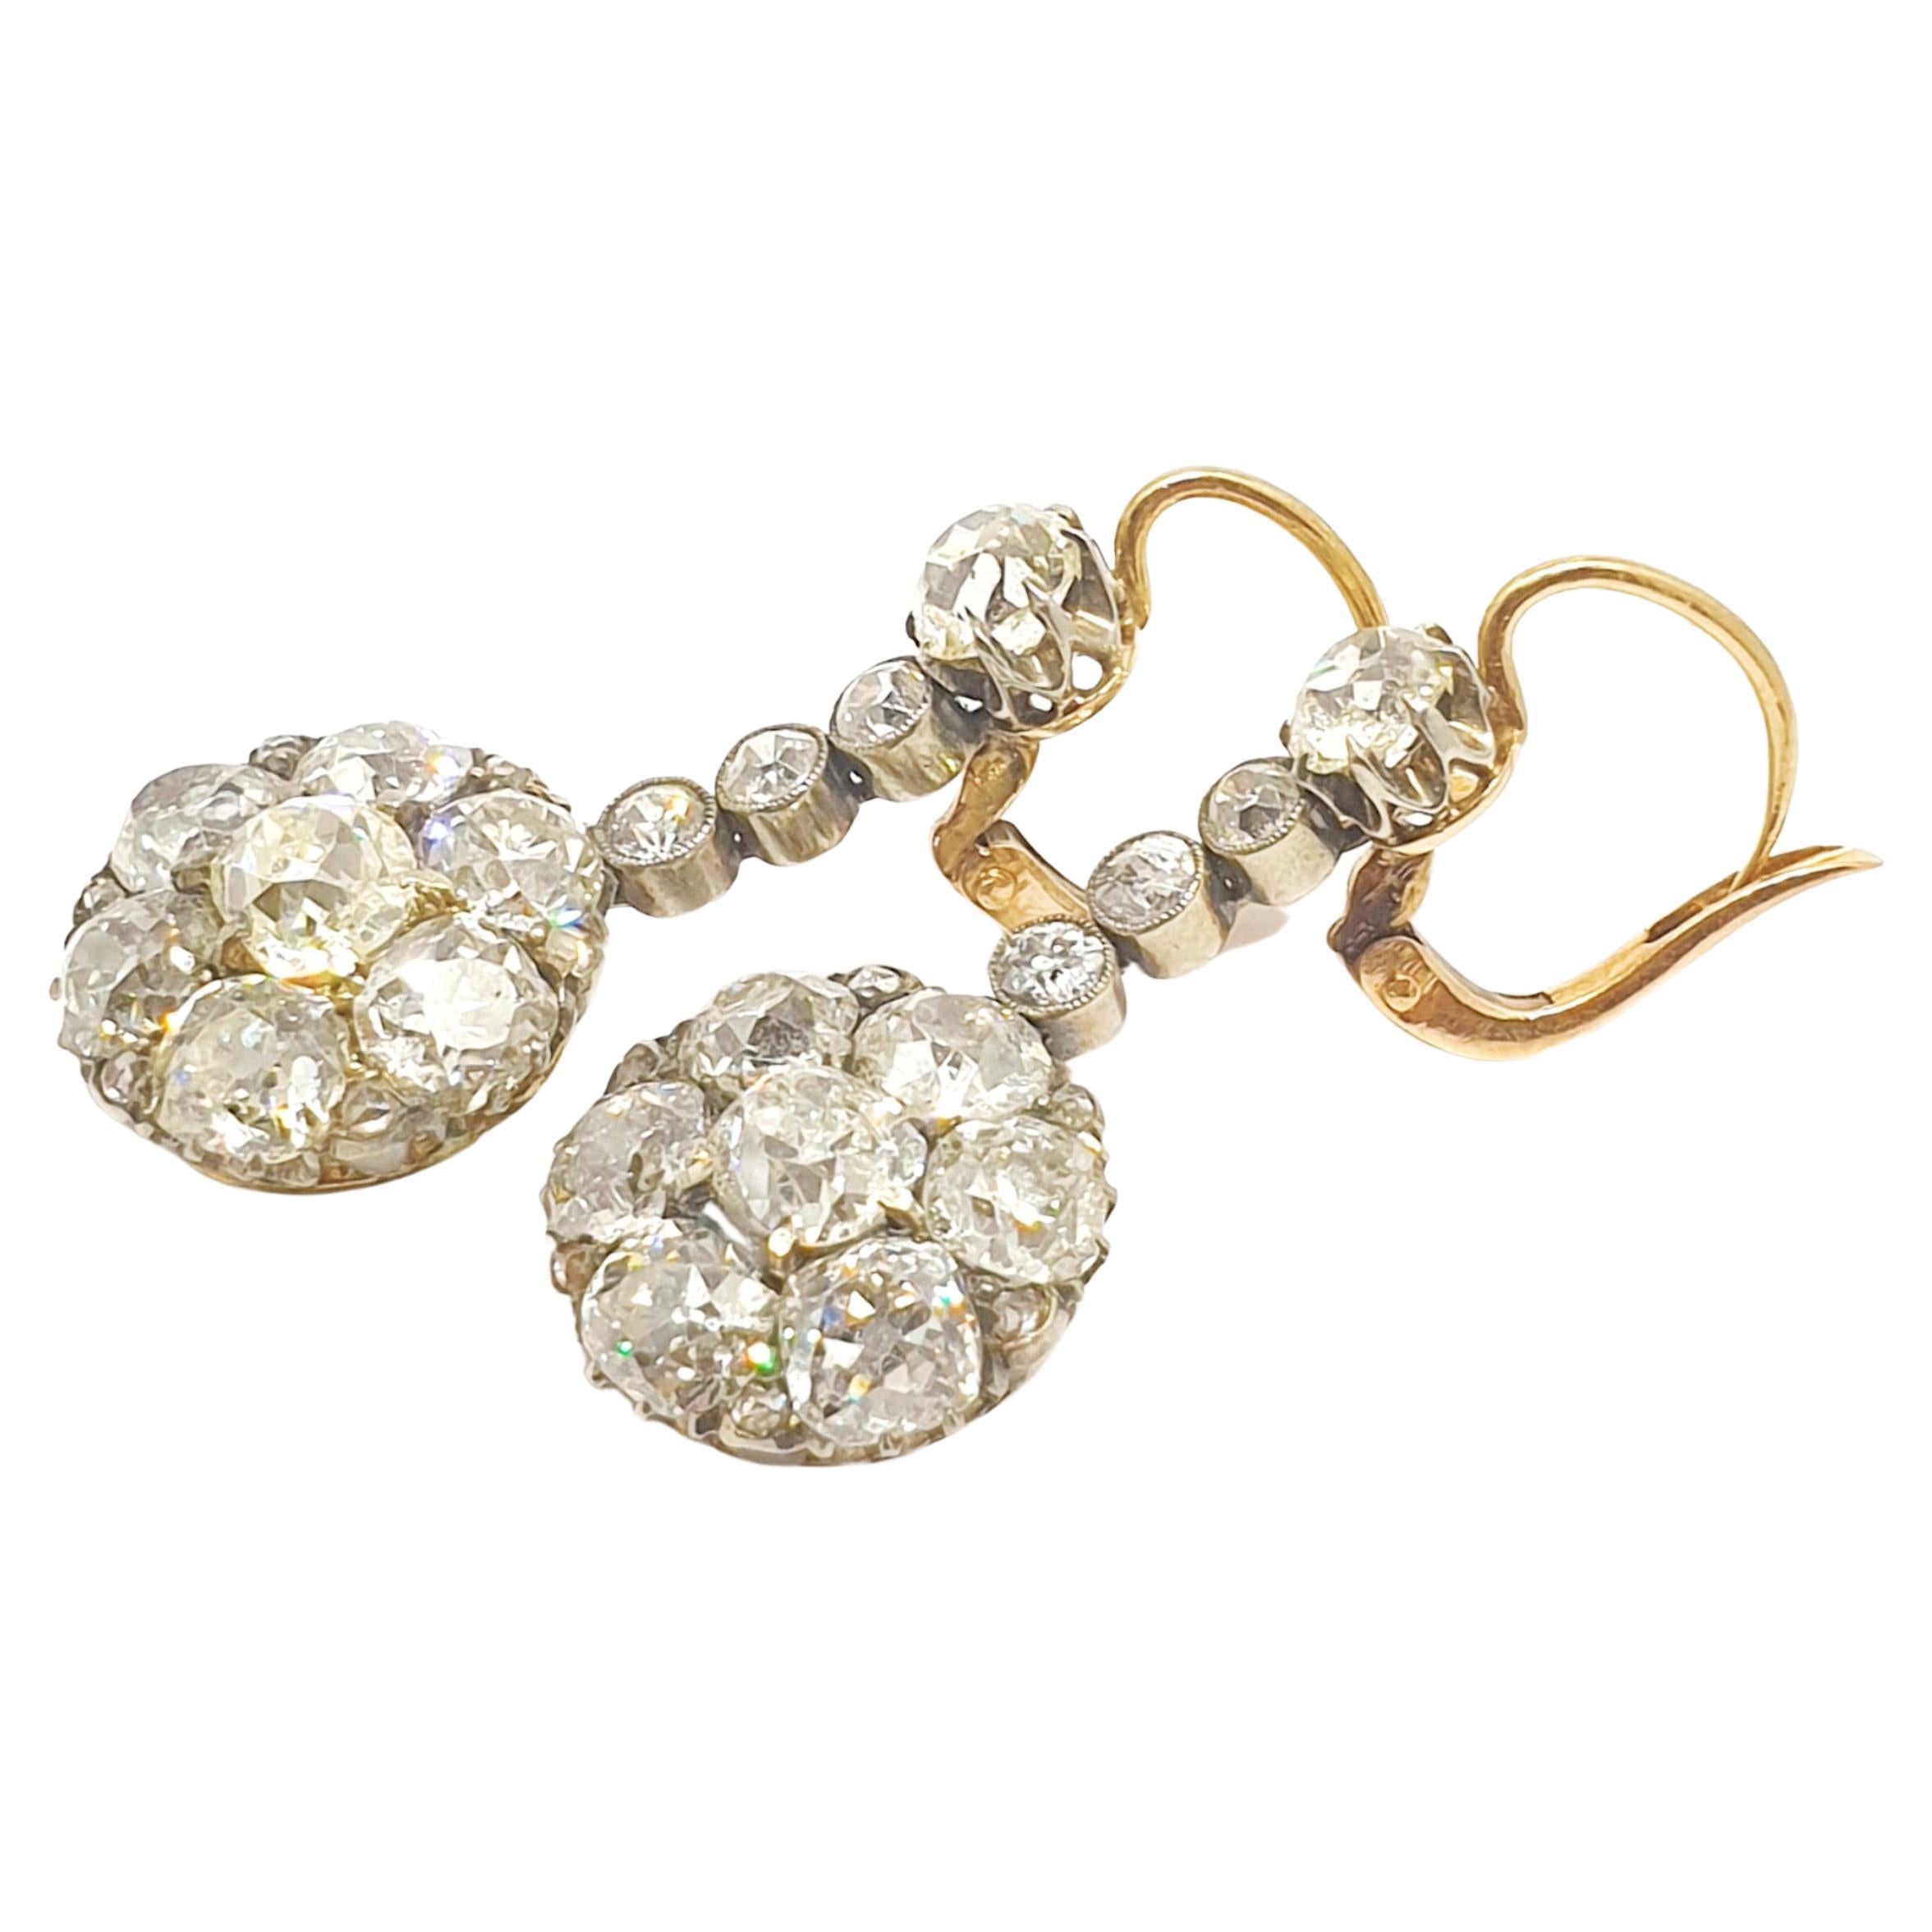 1910s earrings